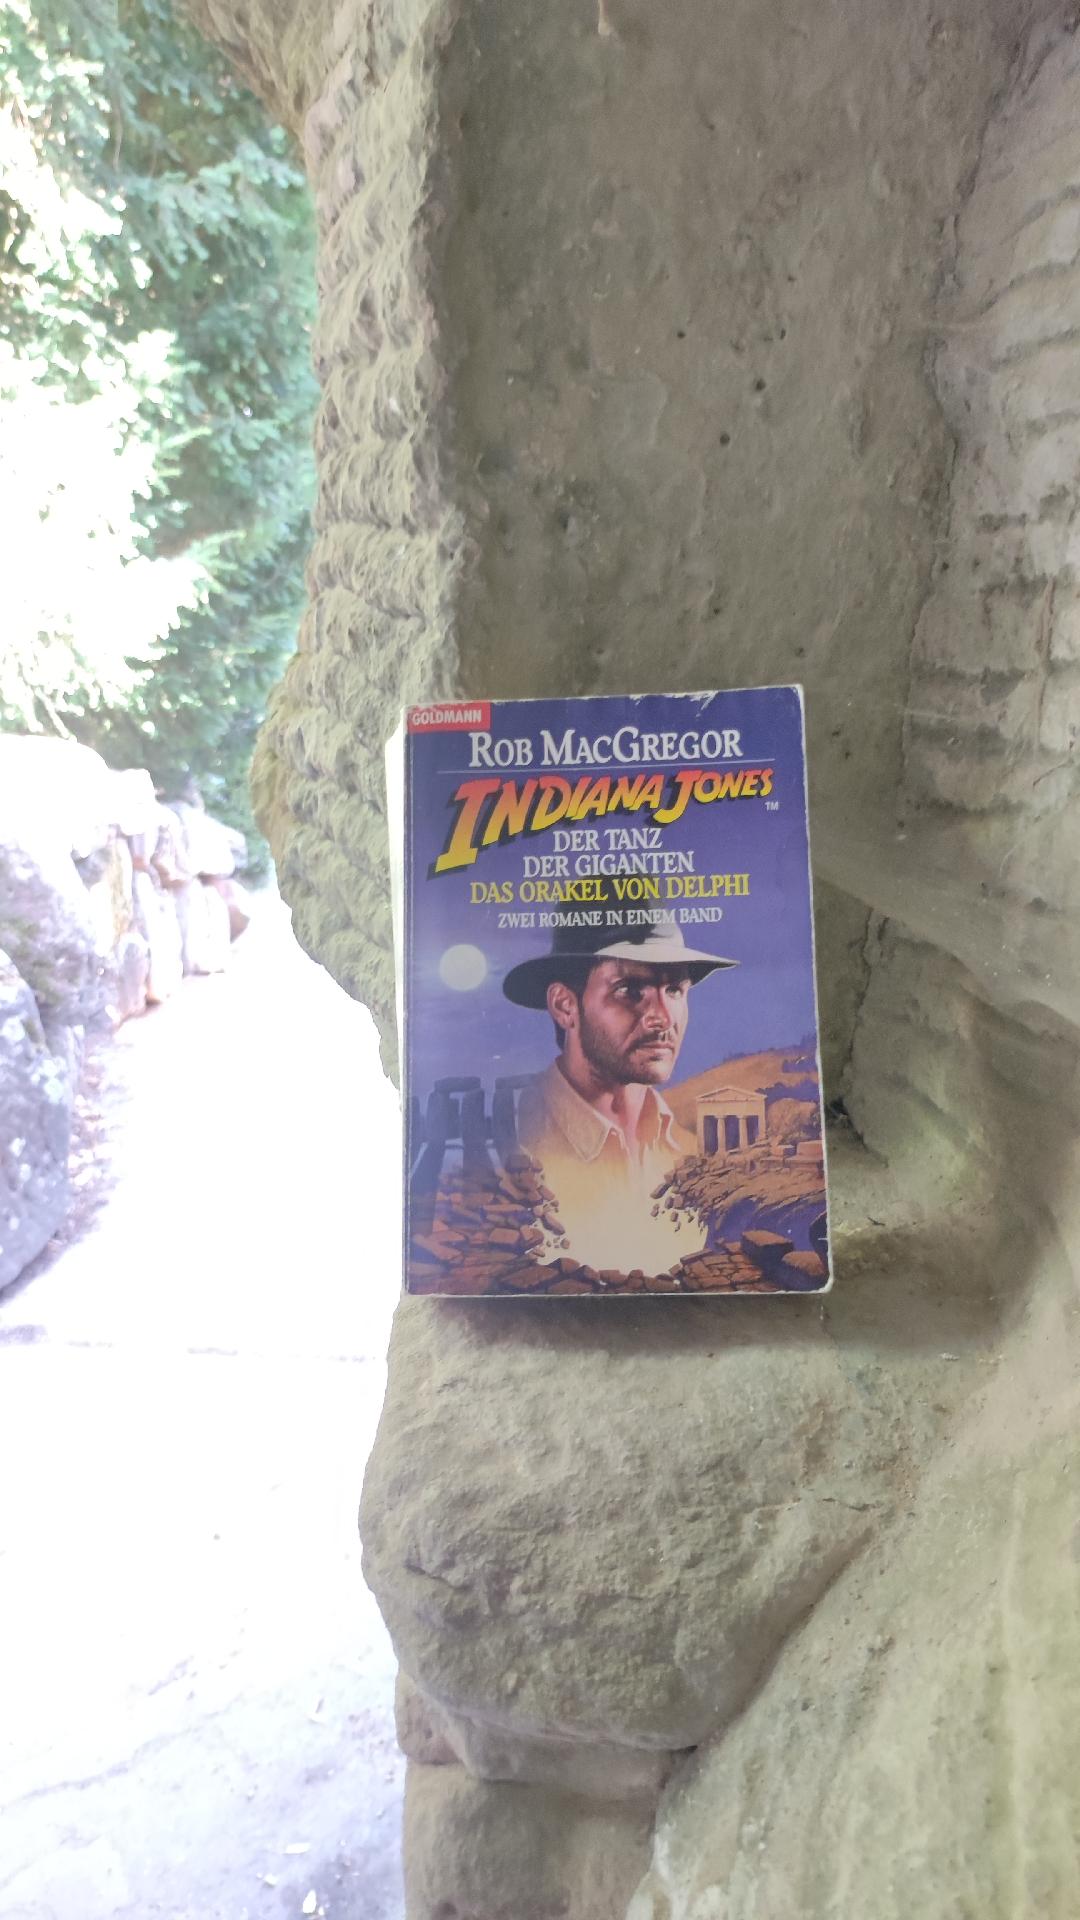 Indiana Jones im Kampf gegen Druiden – MacGregor, Rob: Indiana Jones und der Tanz der Giganten